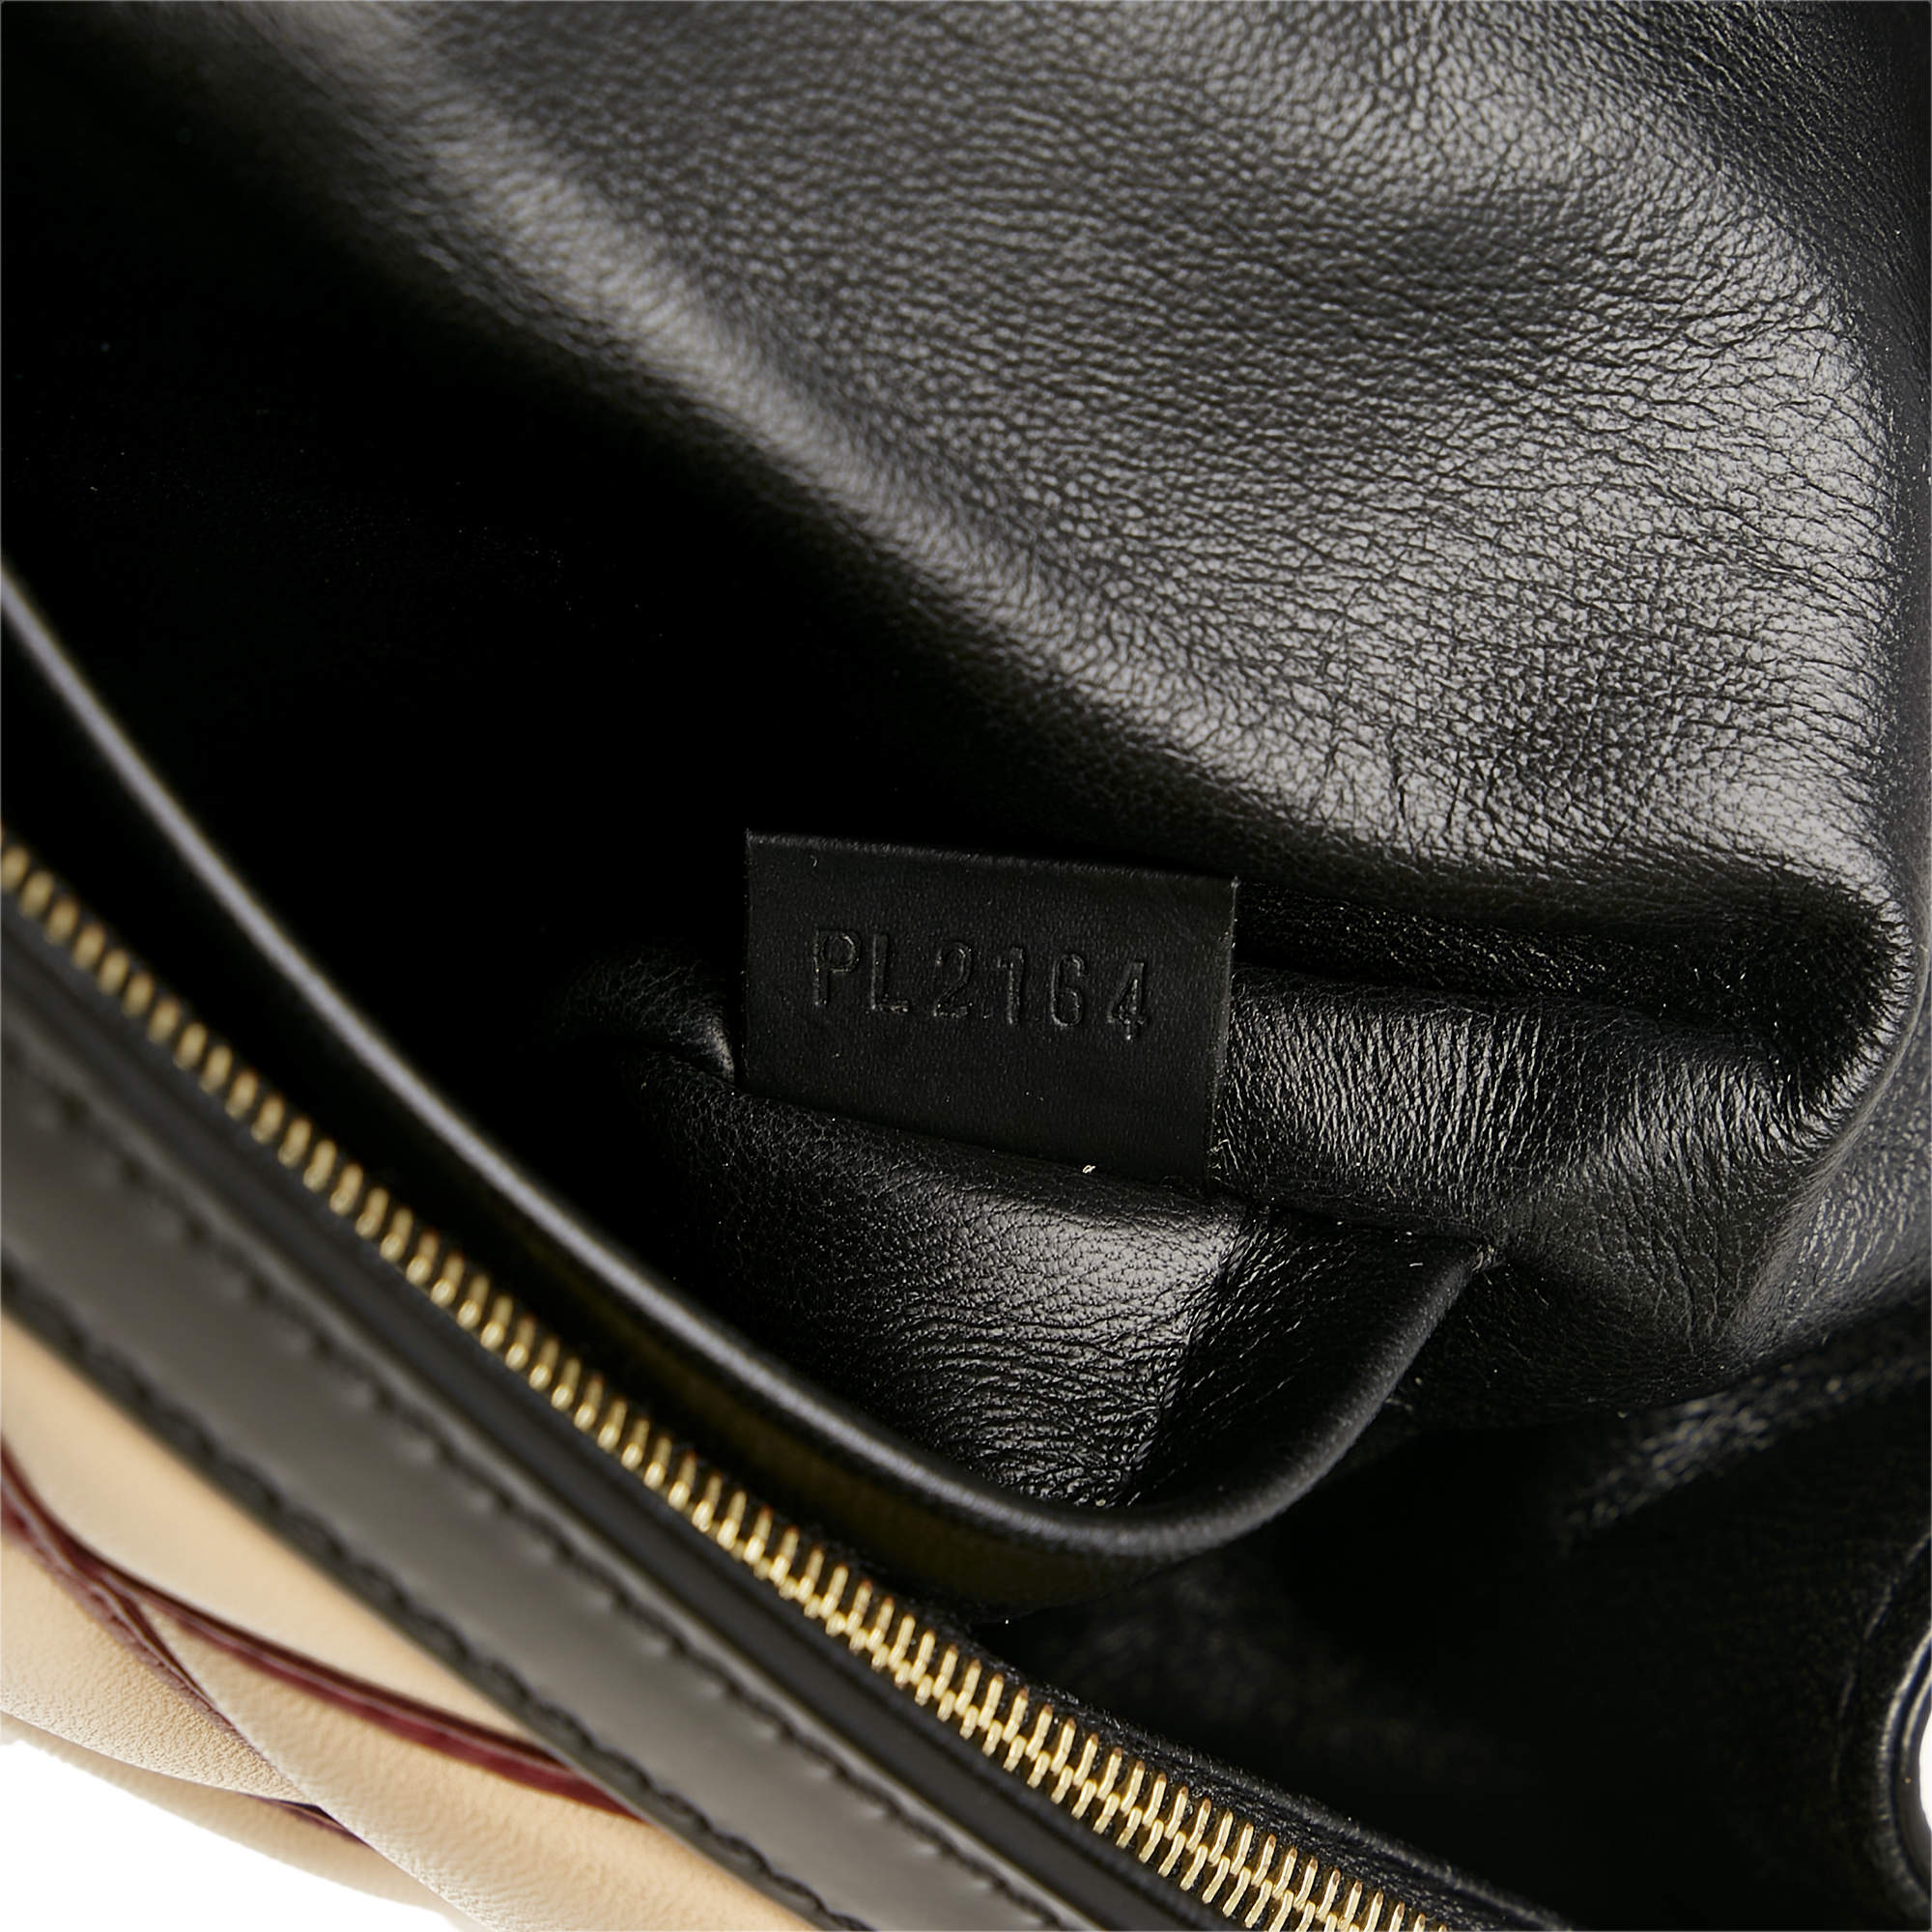 Louis Vuitton Beige?Black Malletage Pochette Flap Bag Louis Vuitton